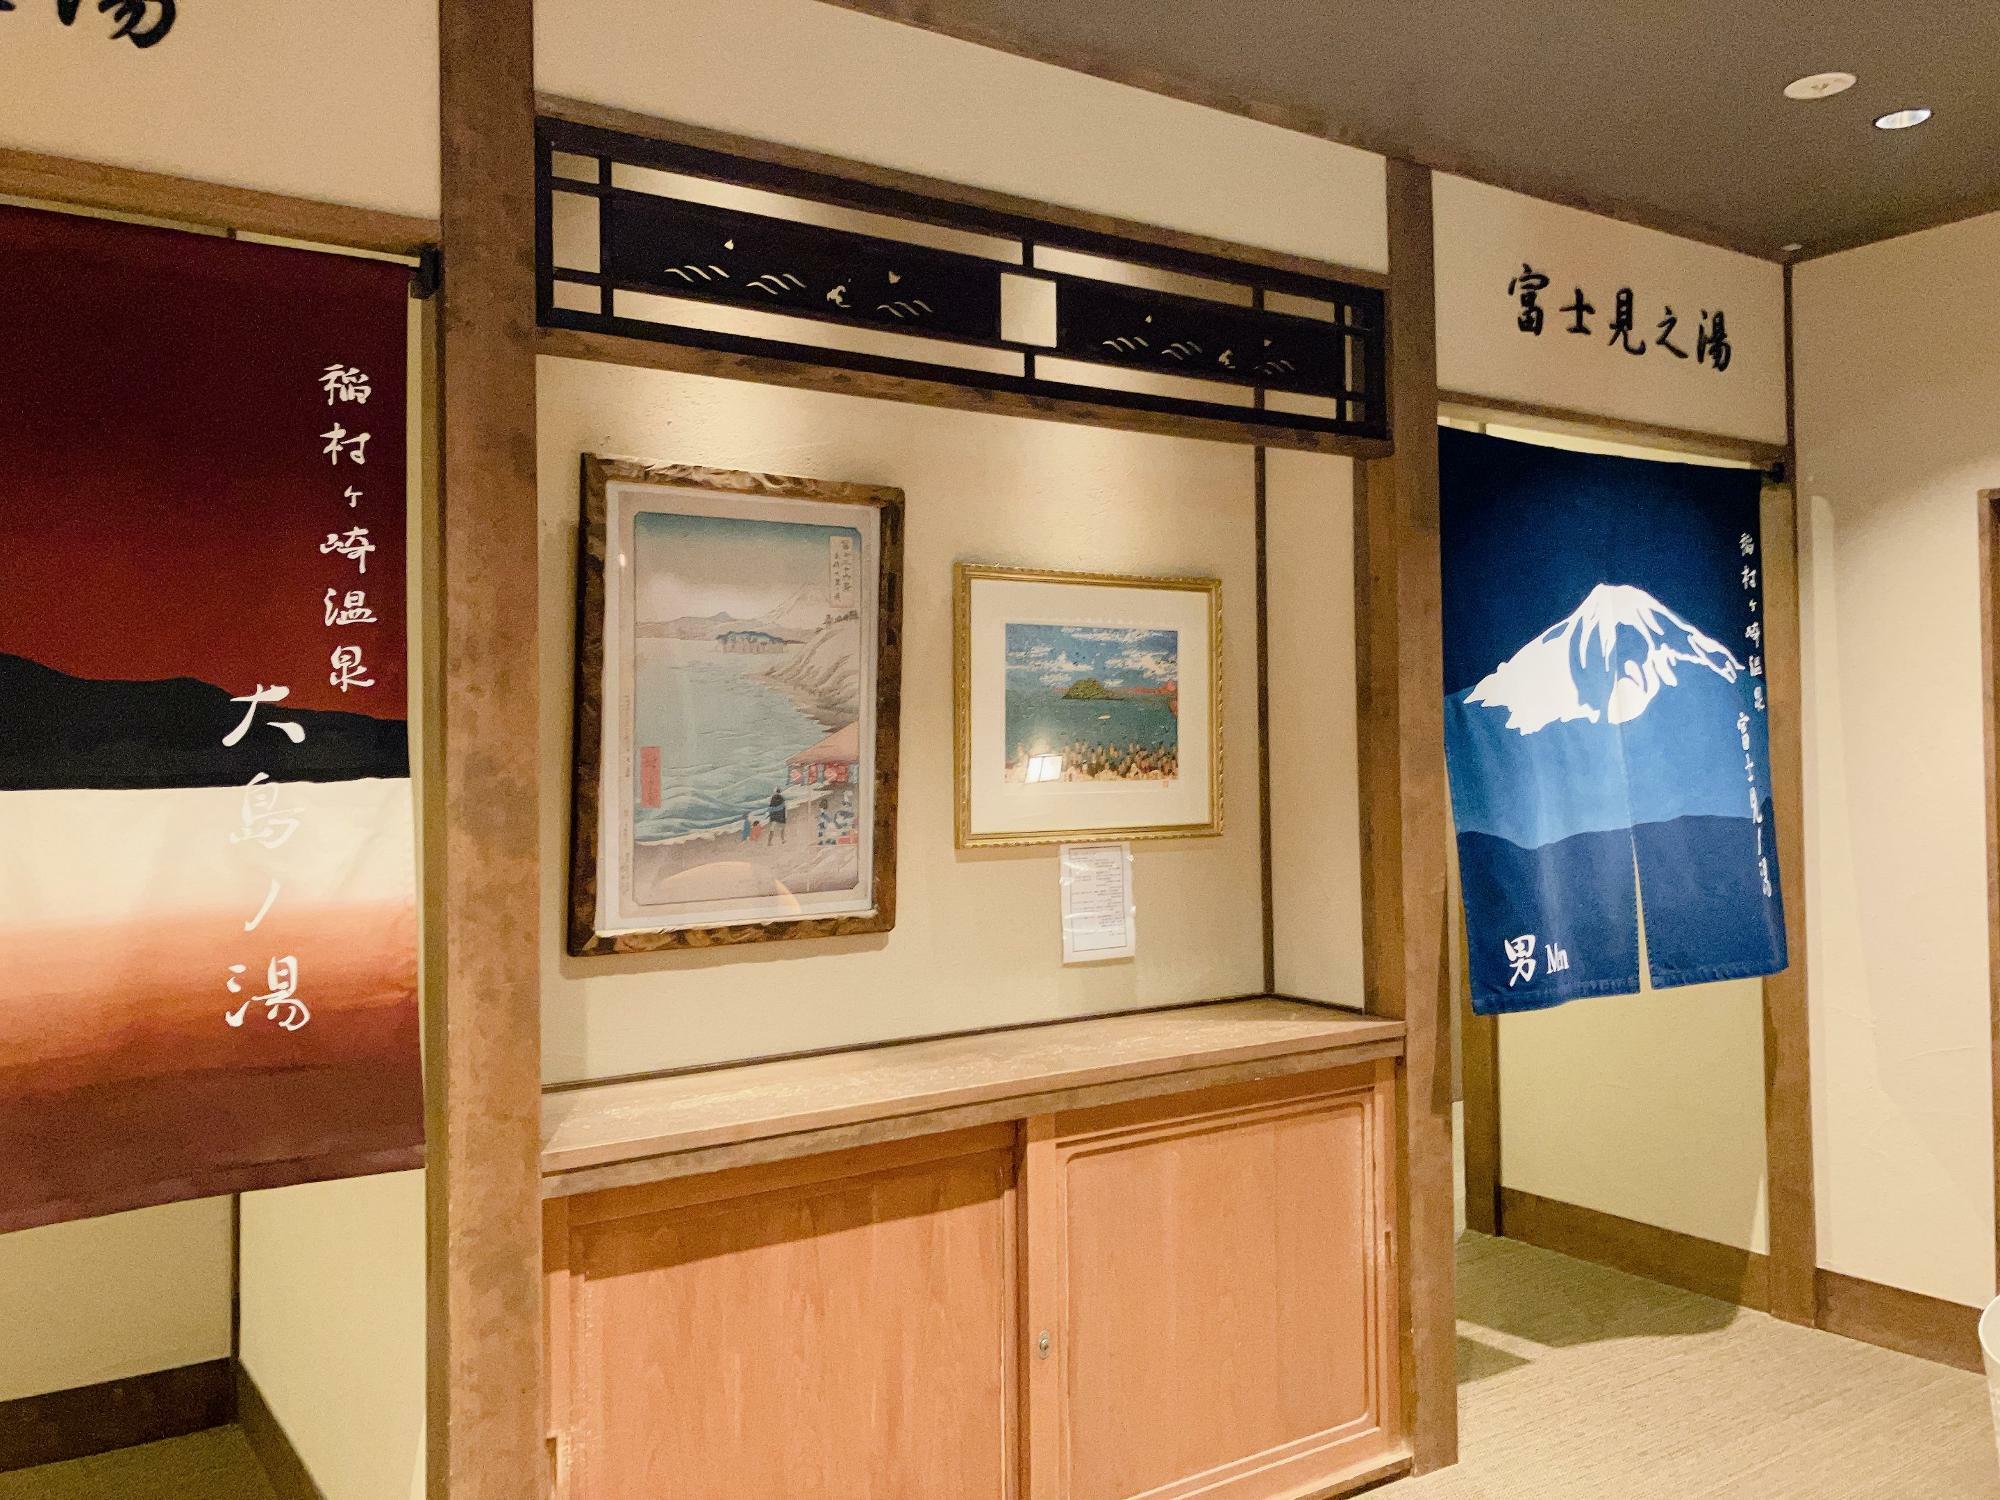 山下清の描いた江ノ島の絵が飾ってありました